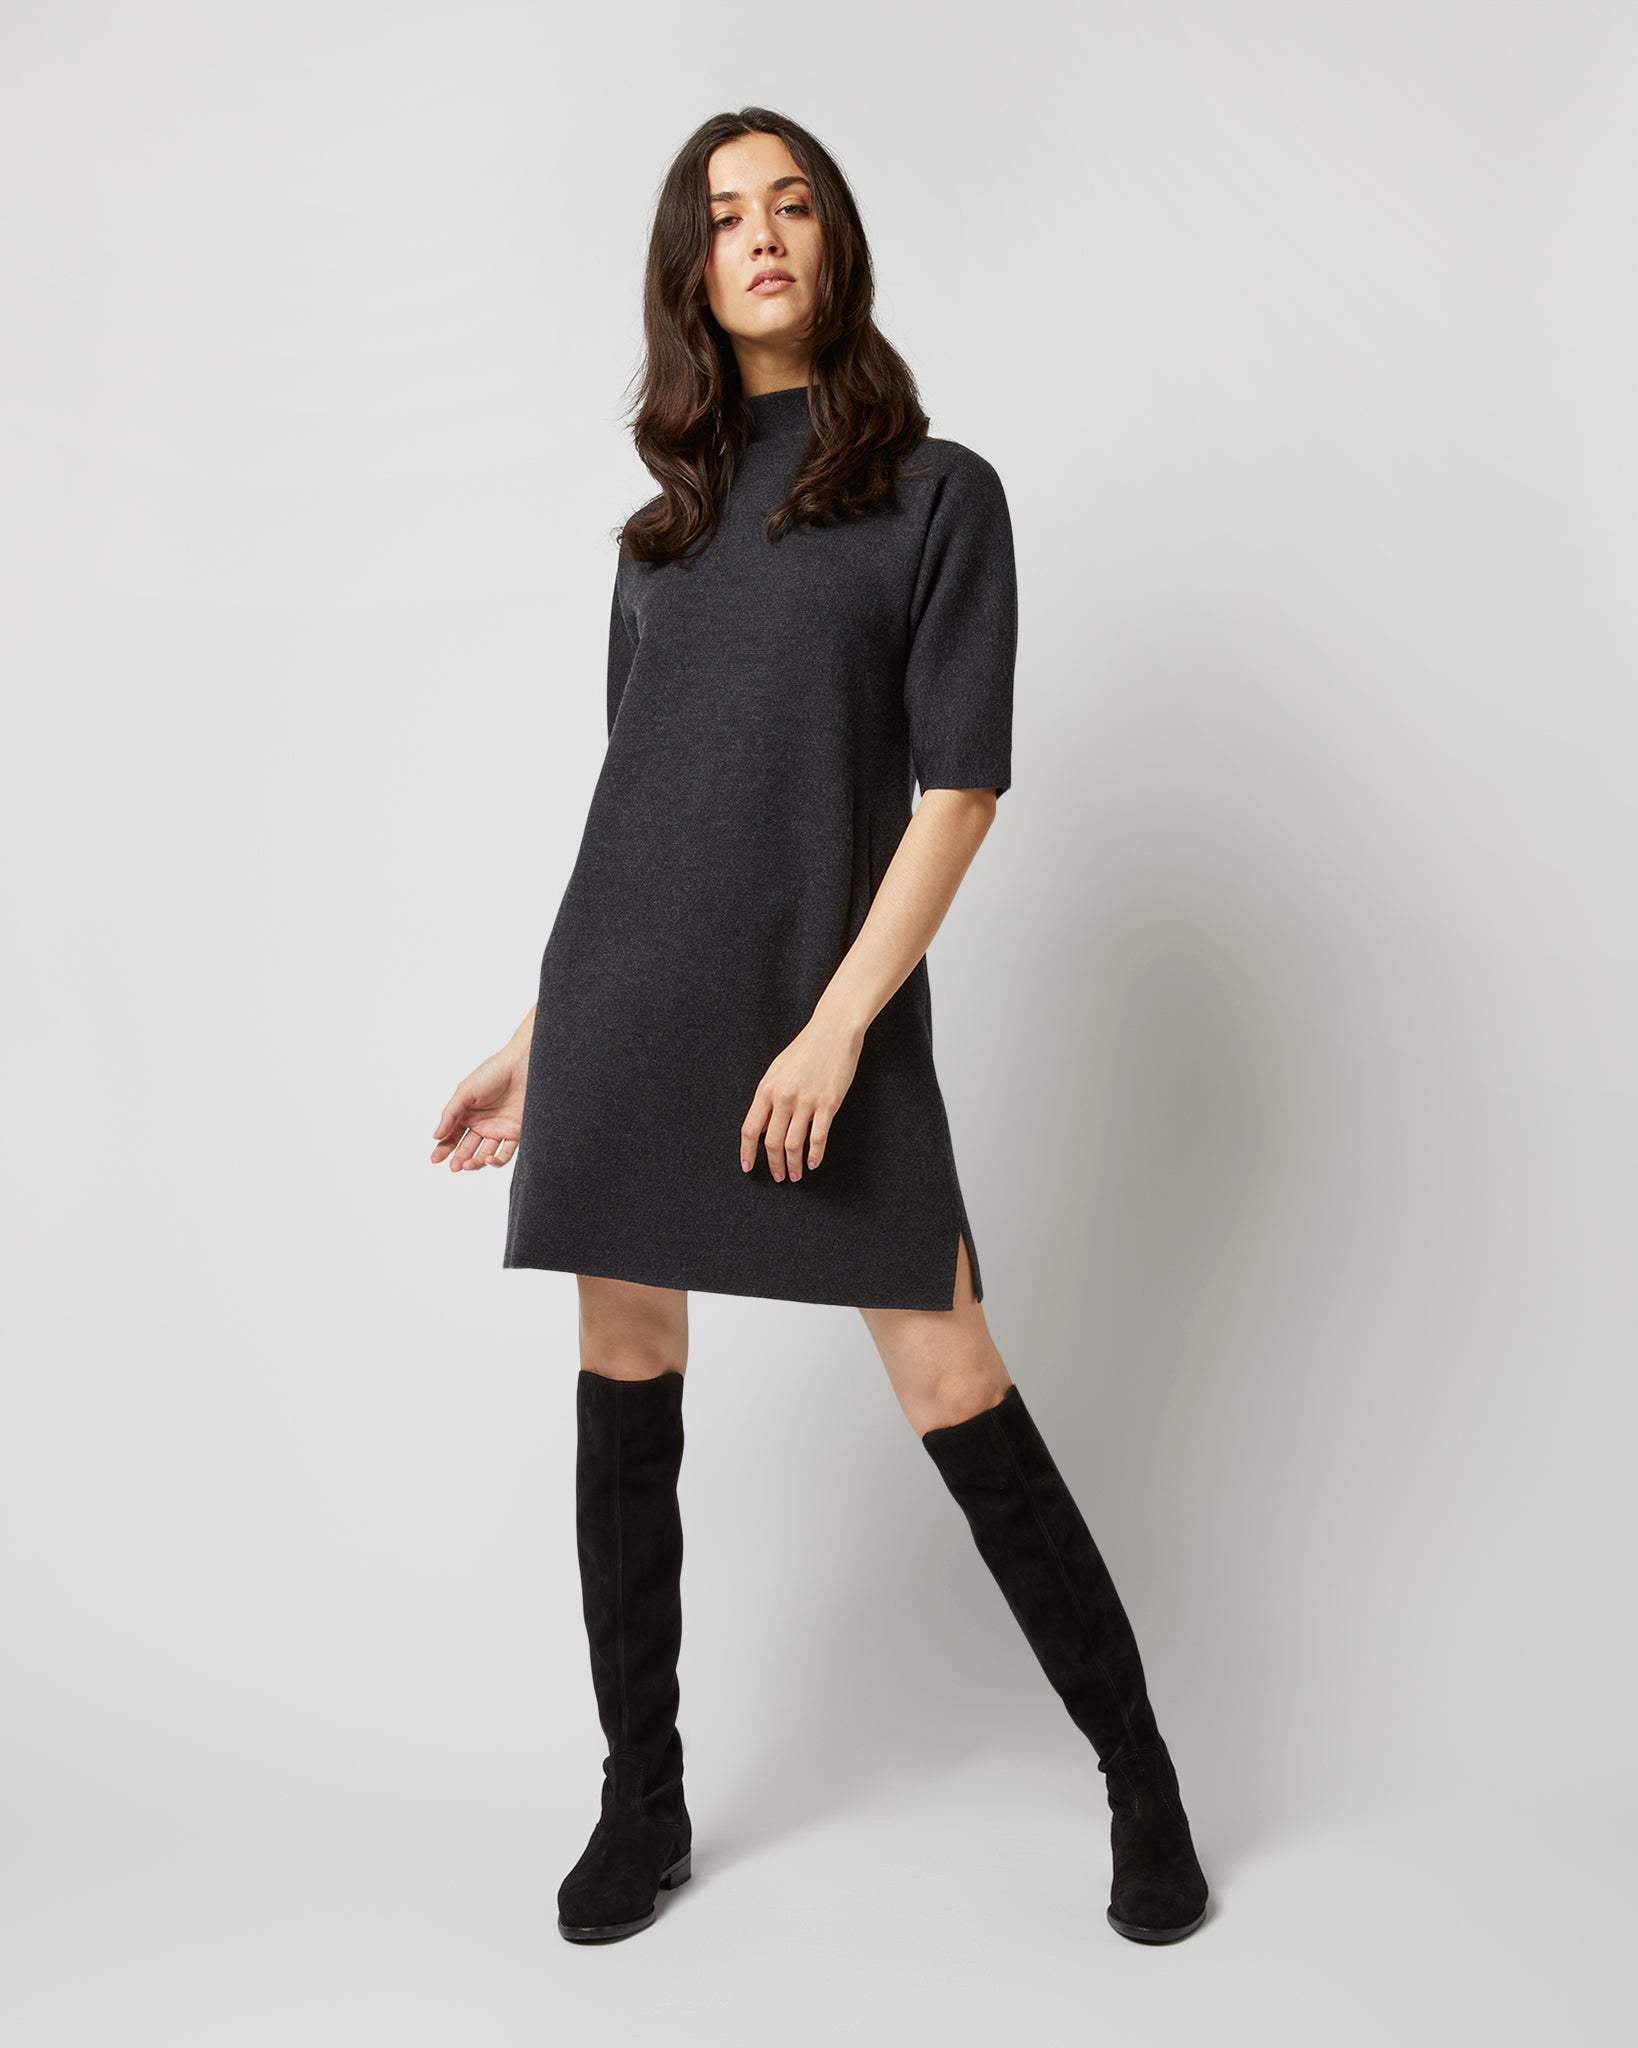 Rowan Short-Sleeved Funnel-Neck Dress in Heather Coal Merino Wool